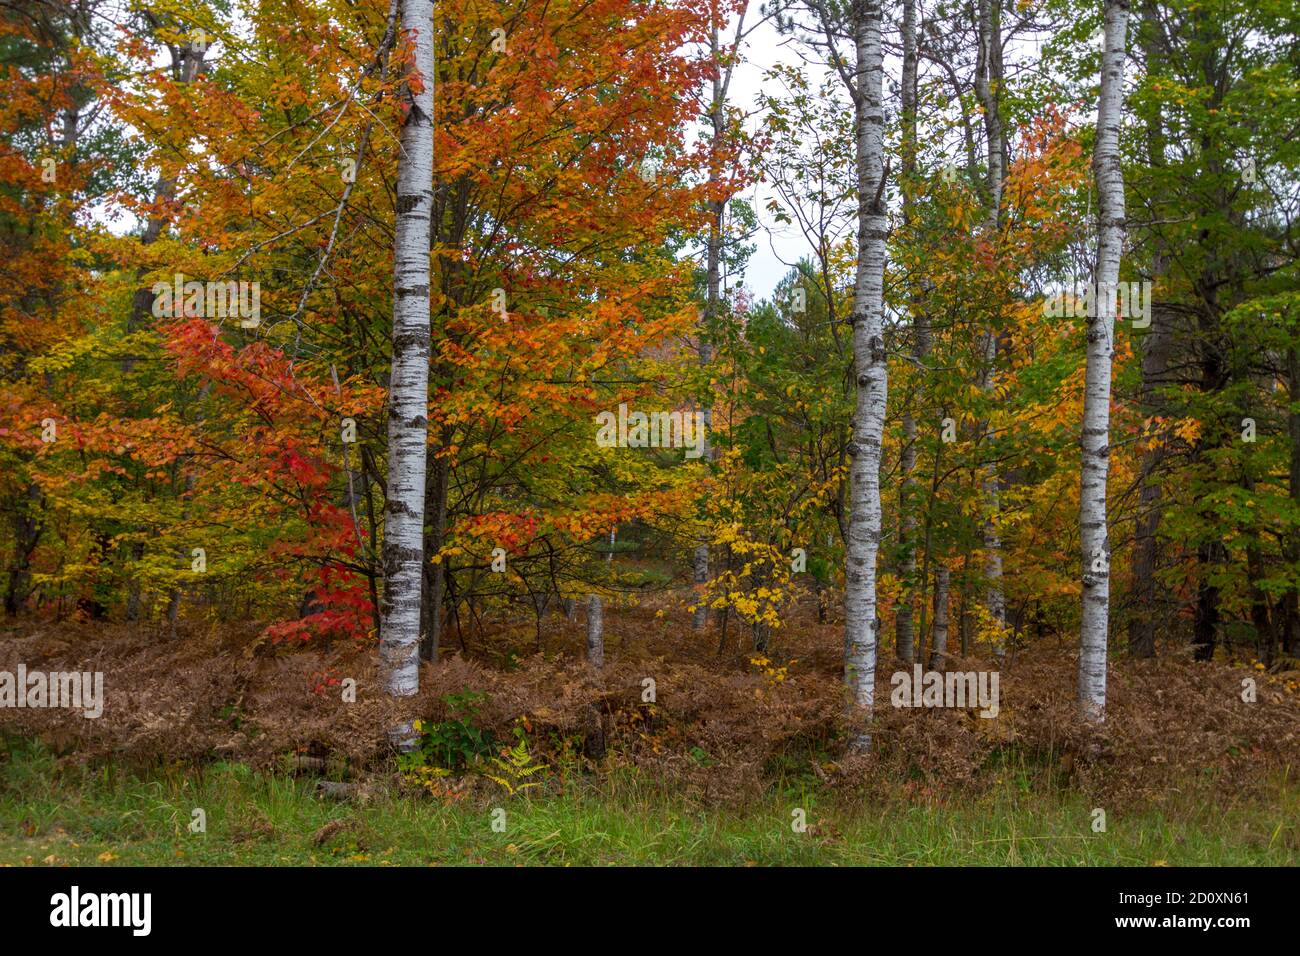 Herbst Natur Hintergrund. Lebendige Herbstfarben auf Zucker Ahornsetzeln und Birken in einem nördlichen Laubwald. Stockfoto